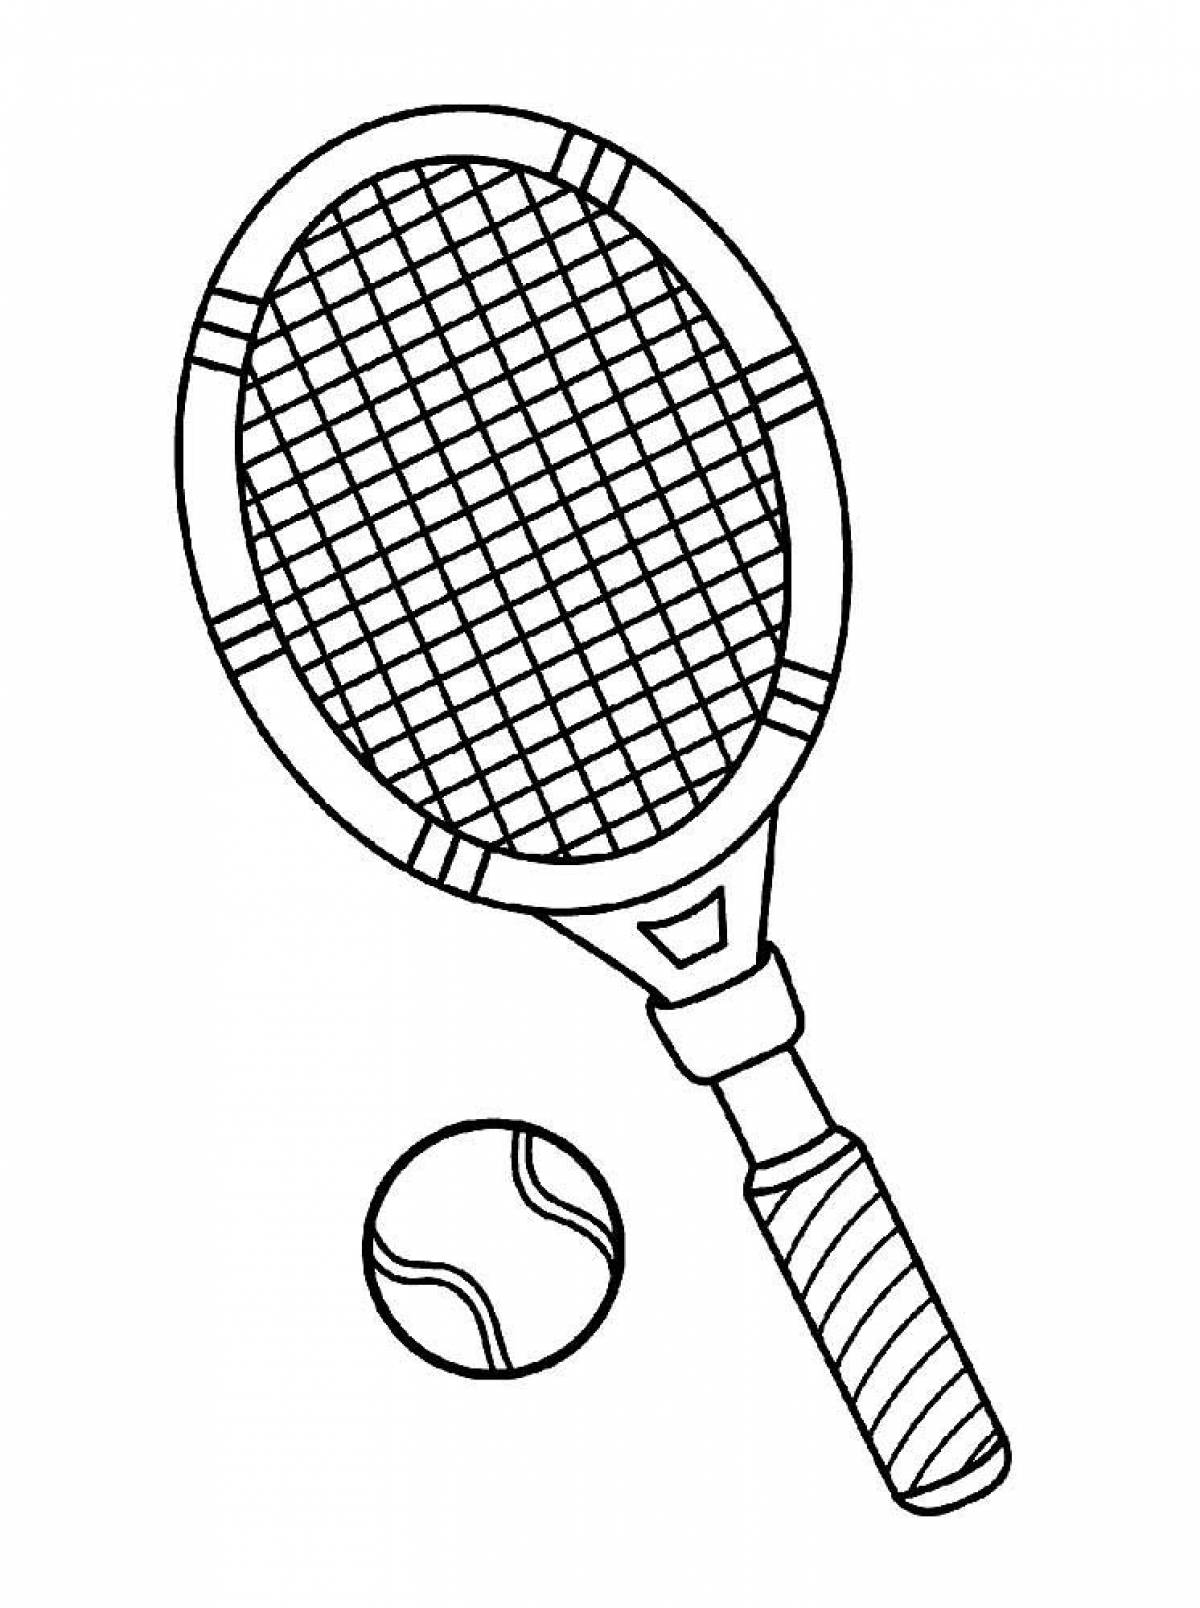 Racket and ball